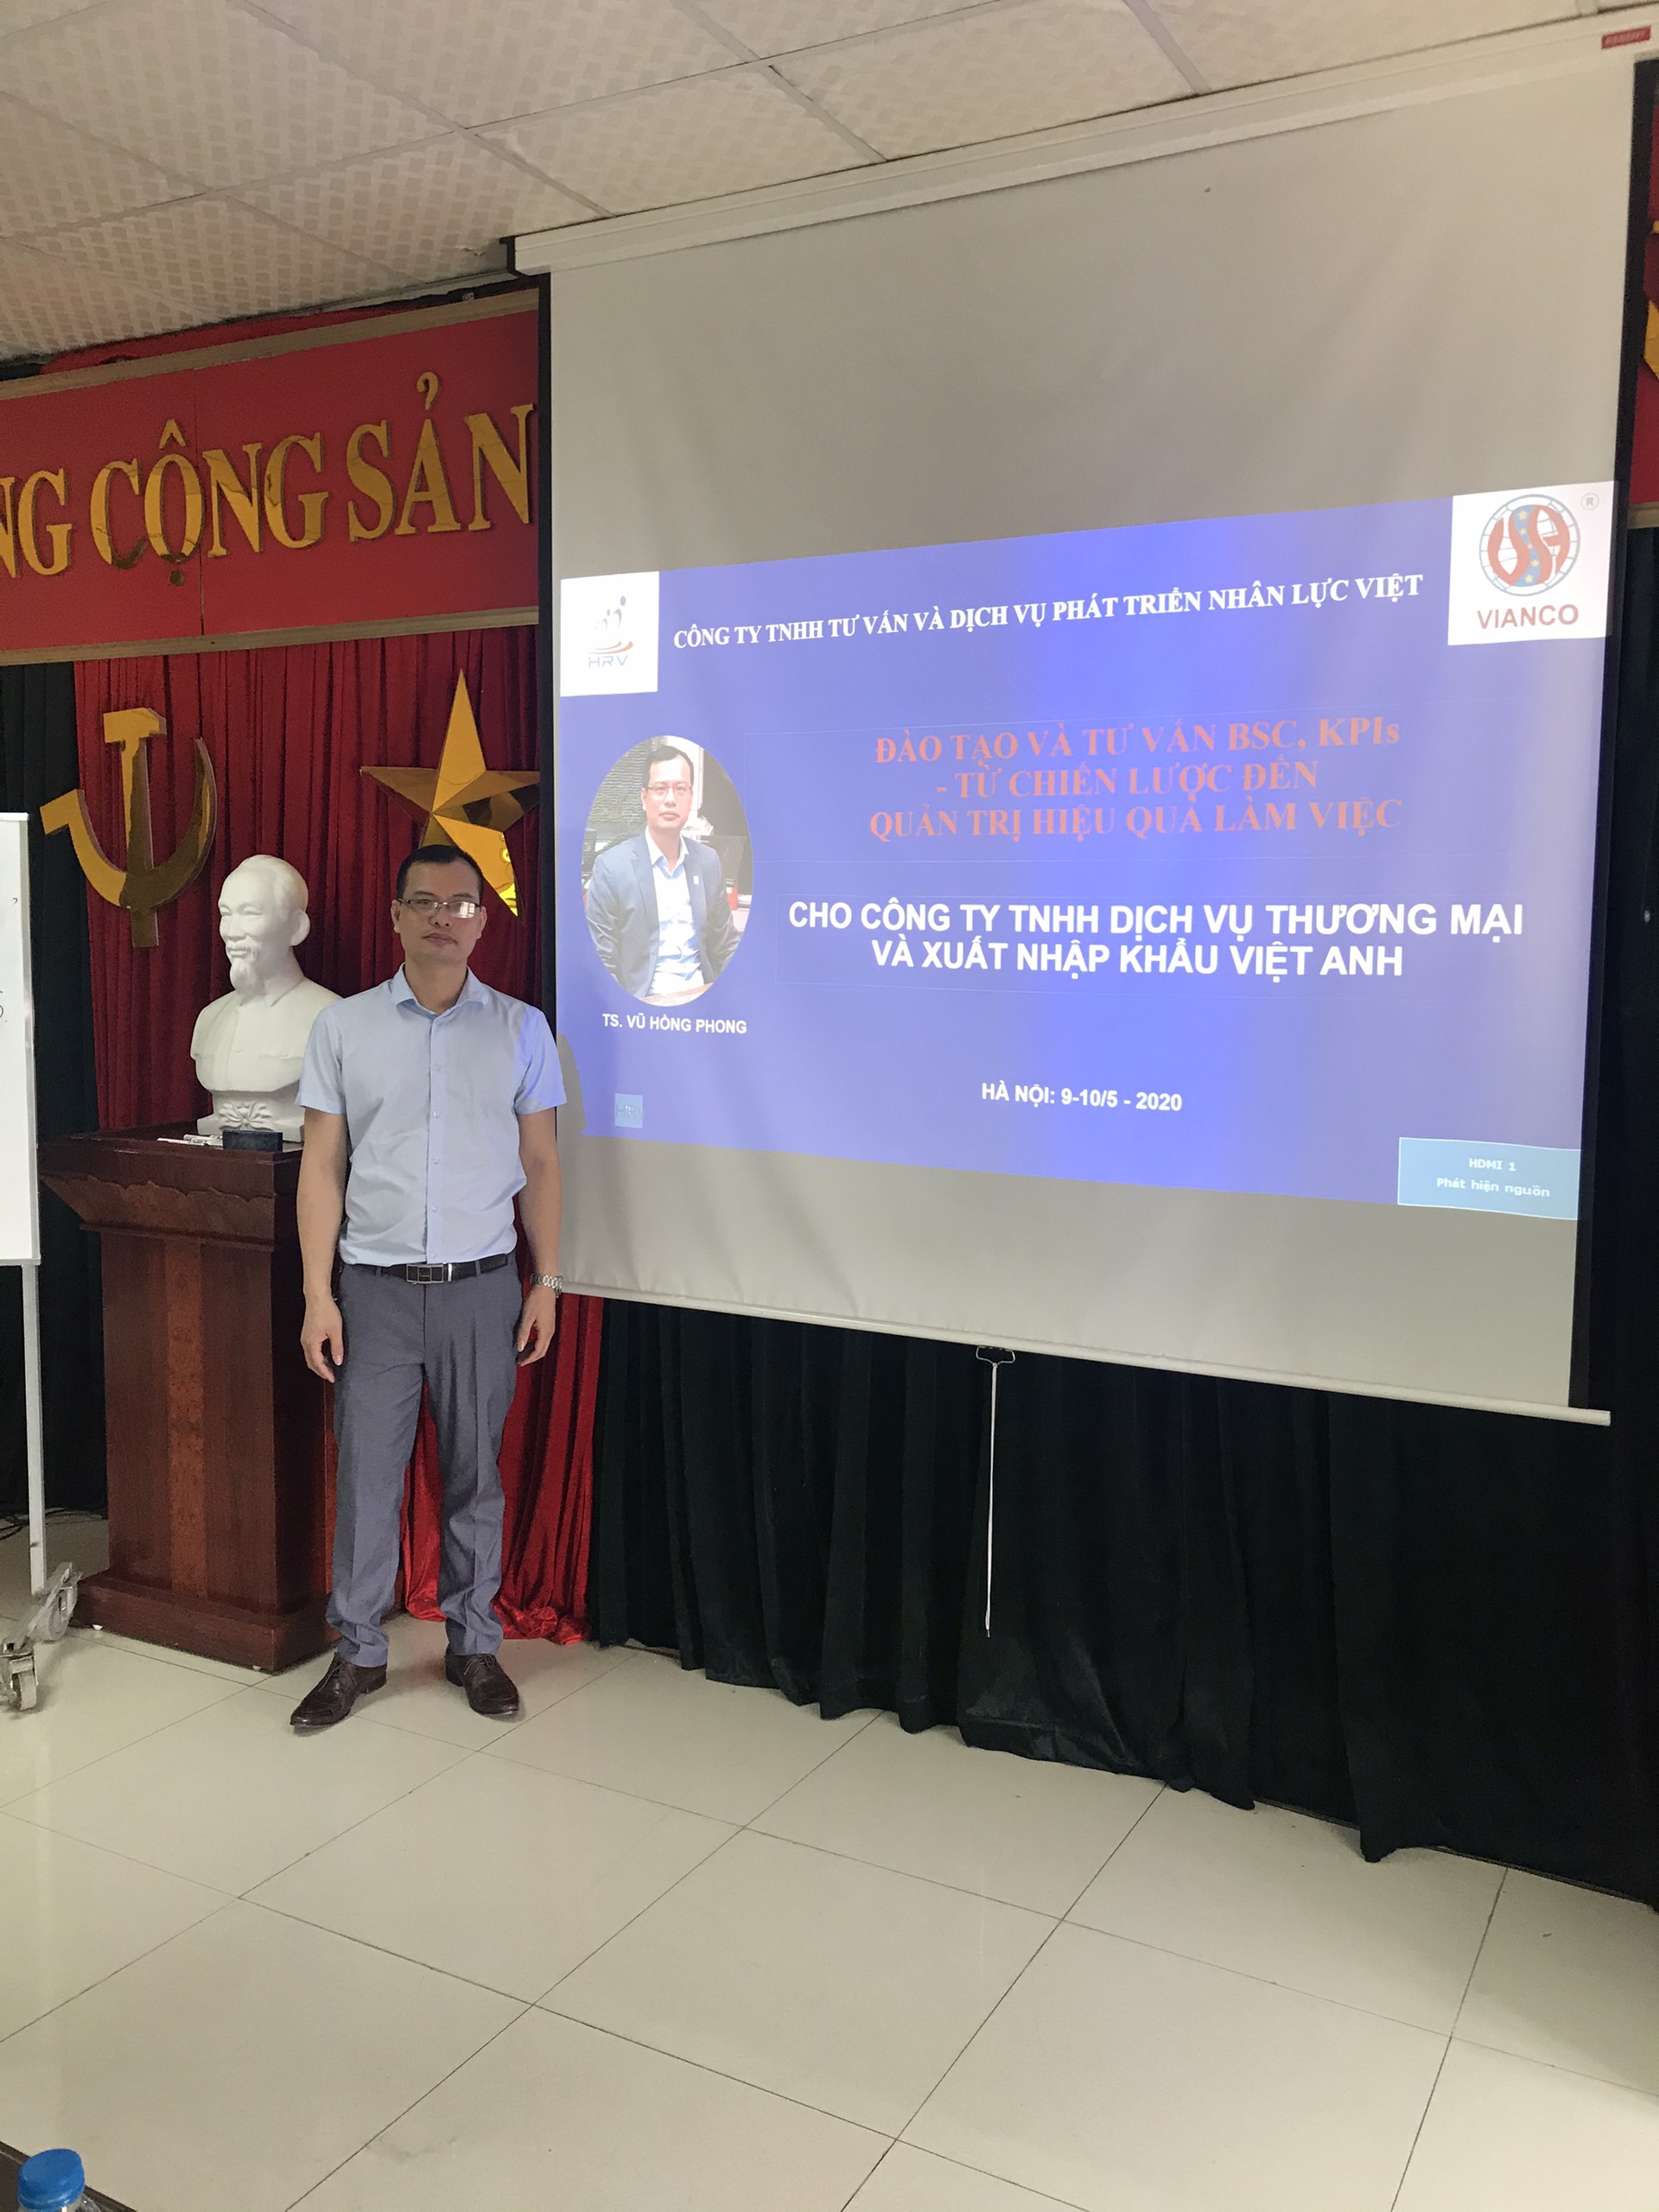 Đào tạo và tư vấn BSC, KPIs cho công ty TNHH TMDV và XNK Việt Anh